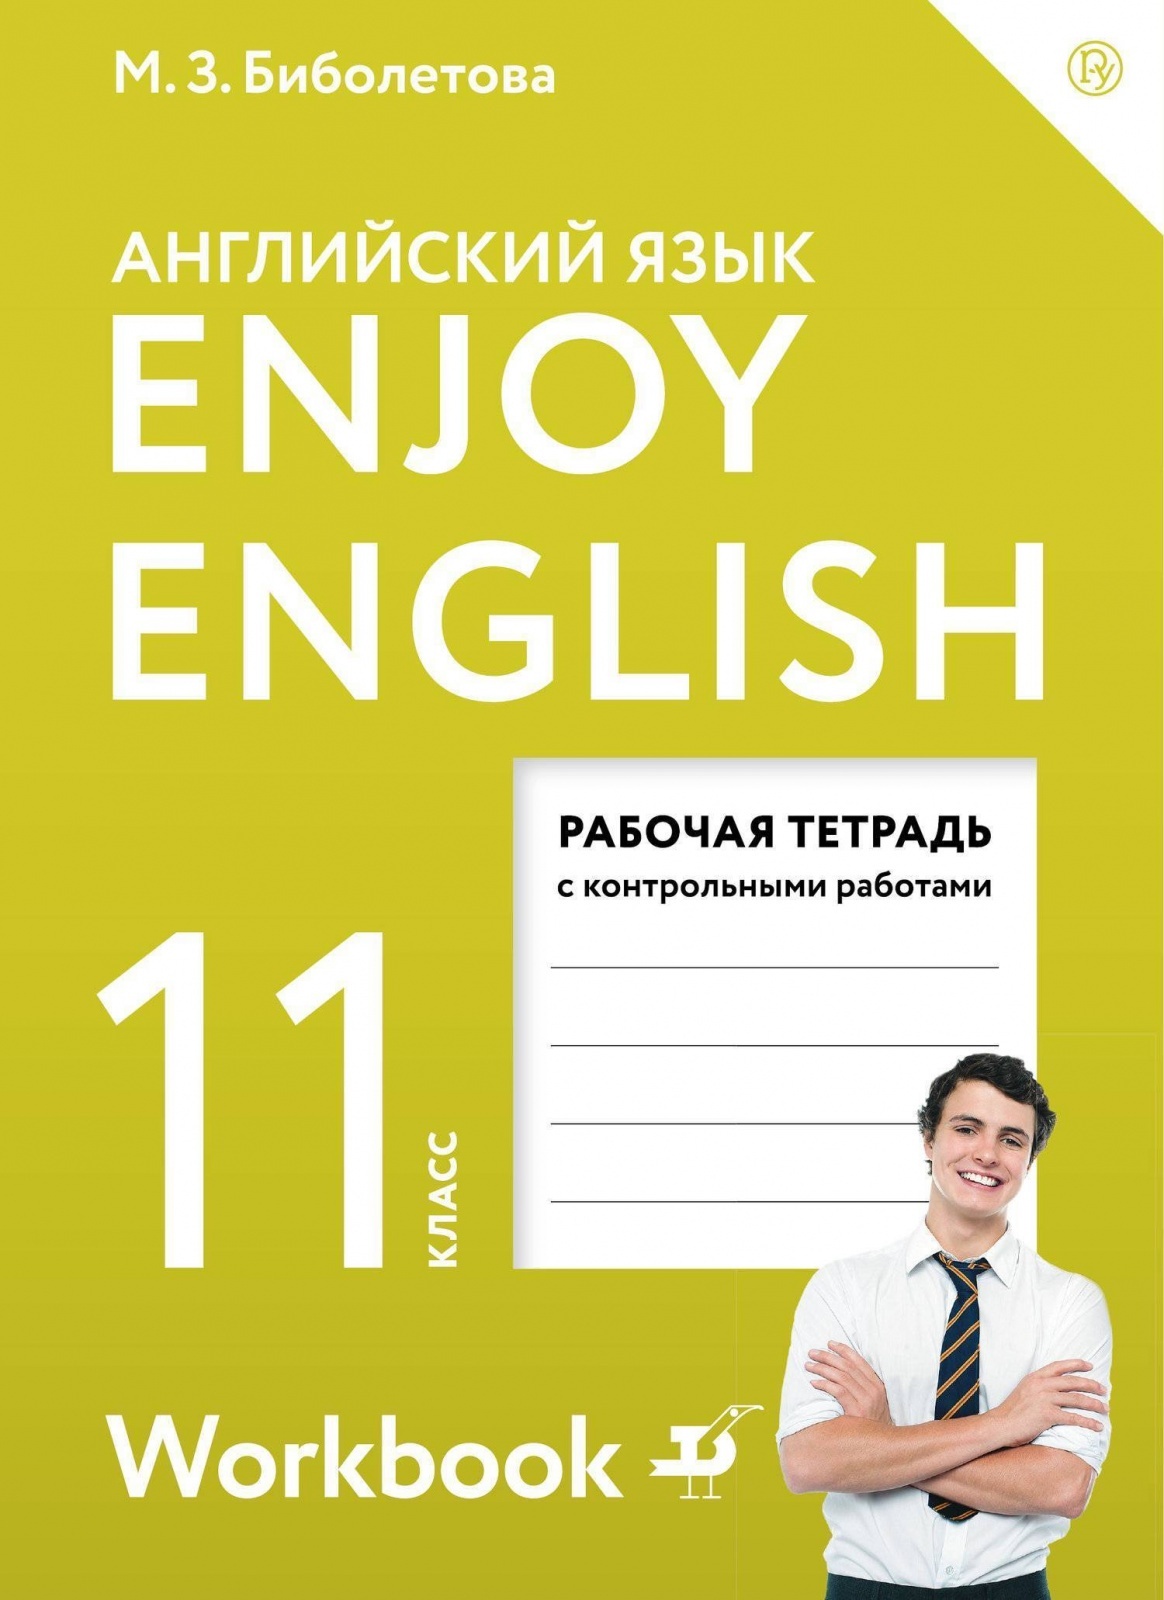 Англ 11 класс рабочая тетрадь. Enjoy English 11 класс. Английский язык enjoy English. Enjoy English 11 класс рабочая тетрадь. Английский язык 11 класс рабочая тетрадь.